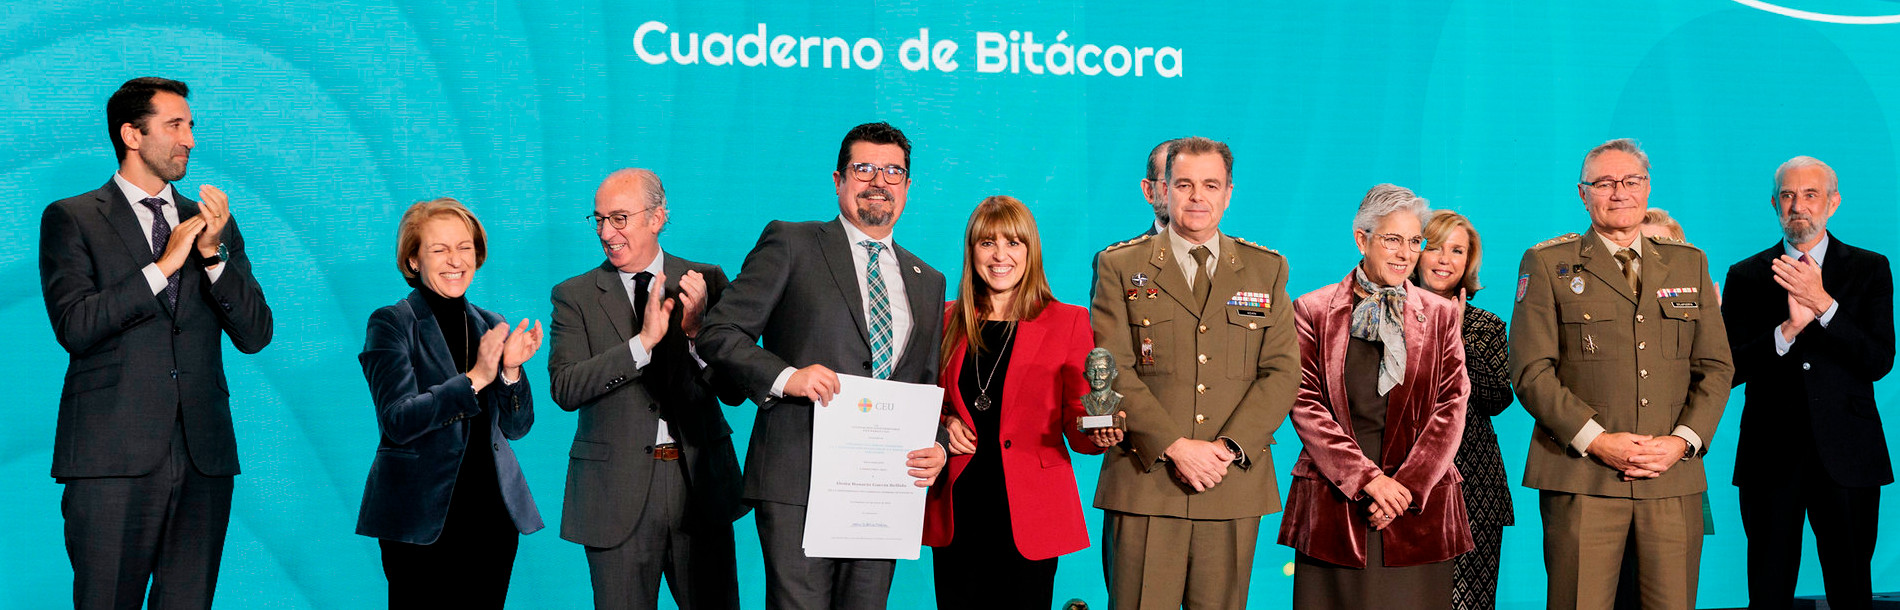 Los “Cuadernos de Bitácora” reciben el Premio CEU Ángel Herrera a la Innovación docente en los Colegios